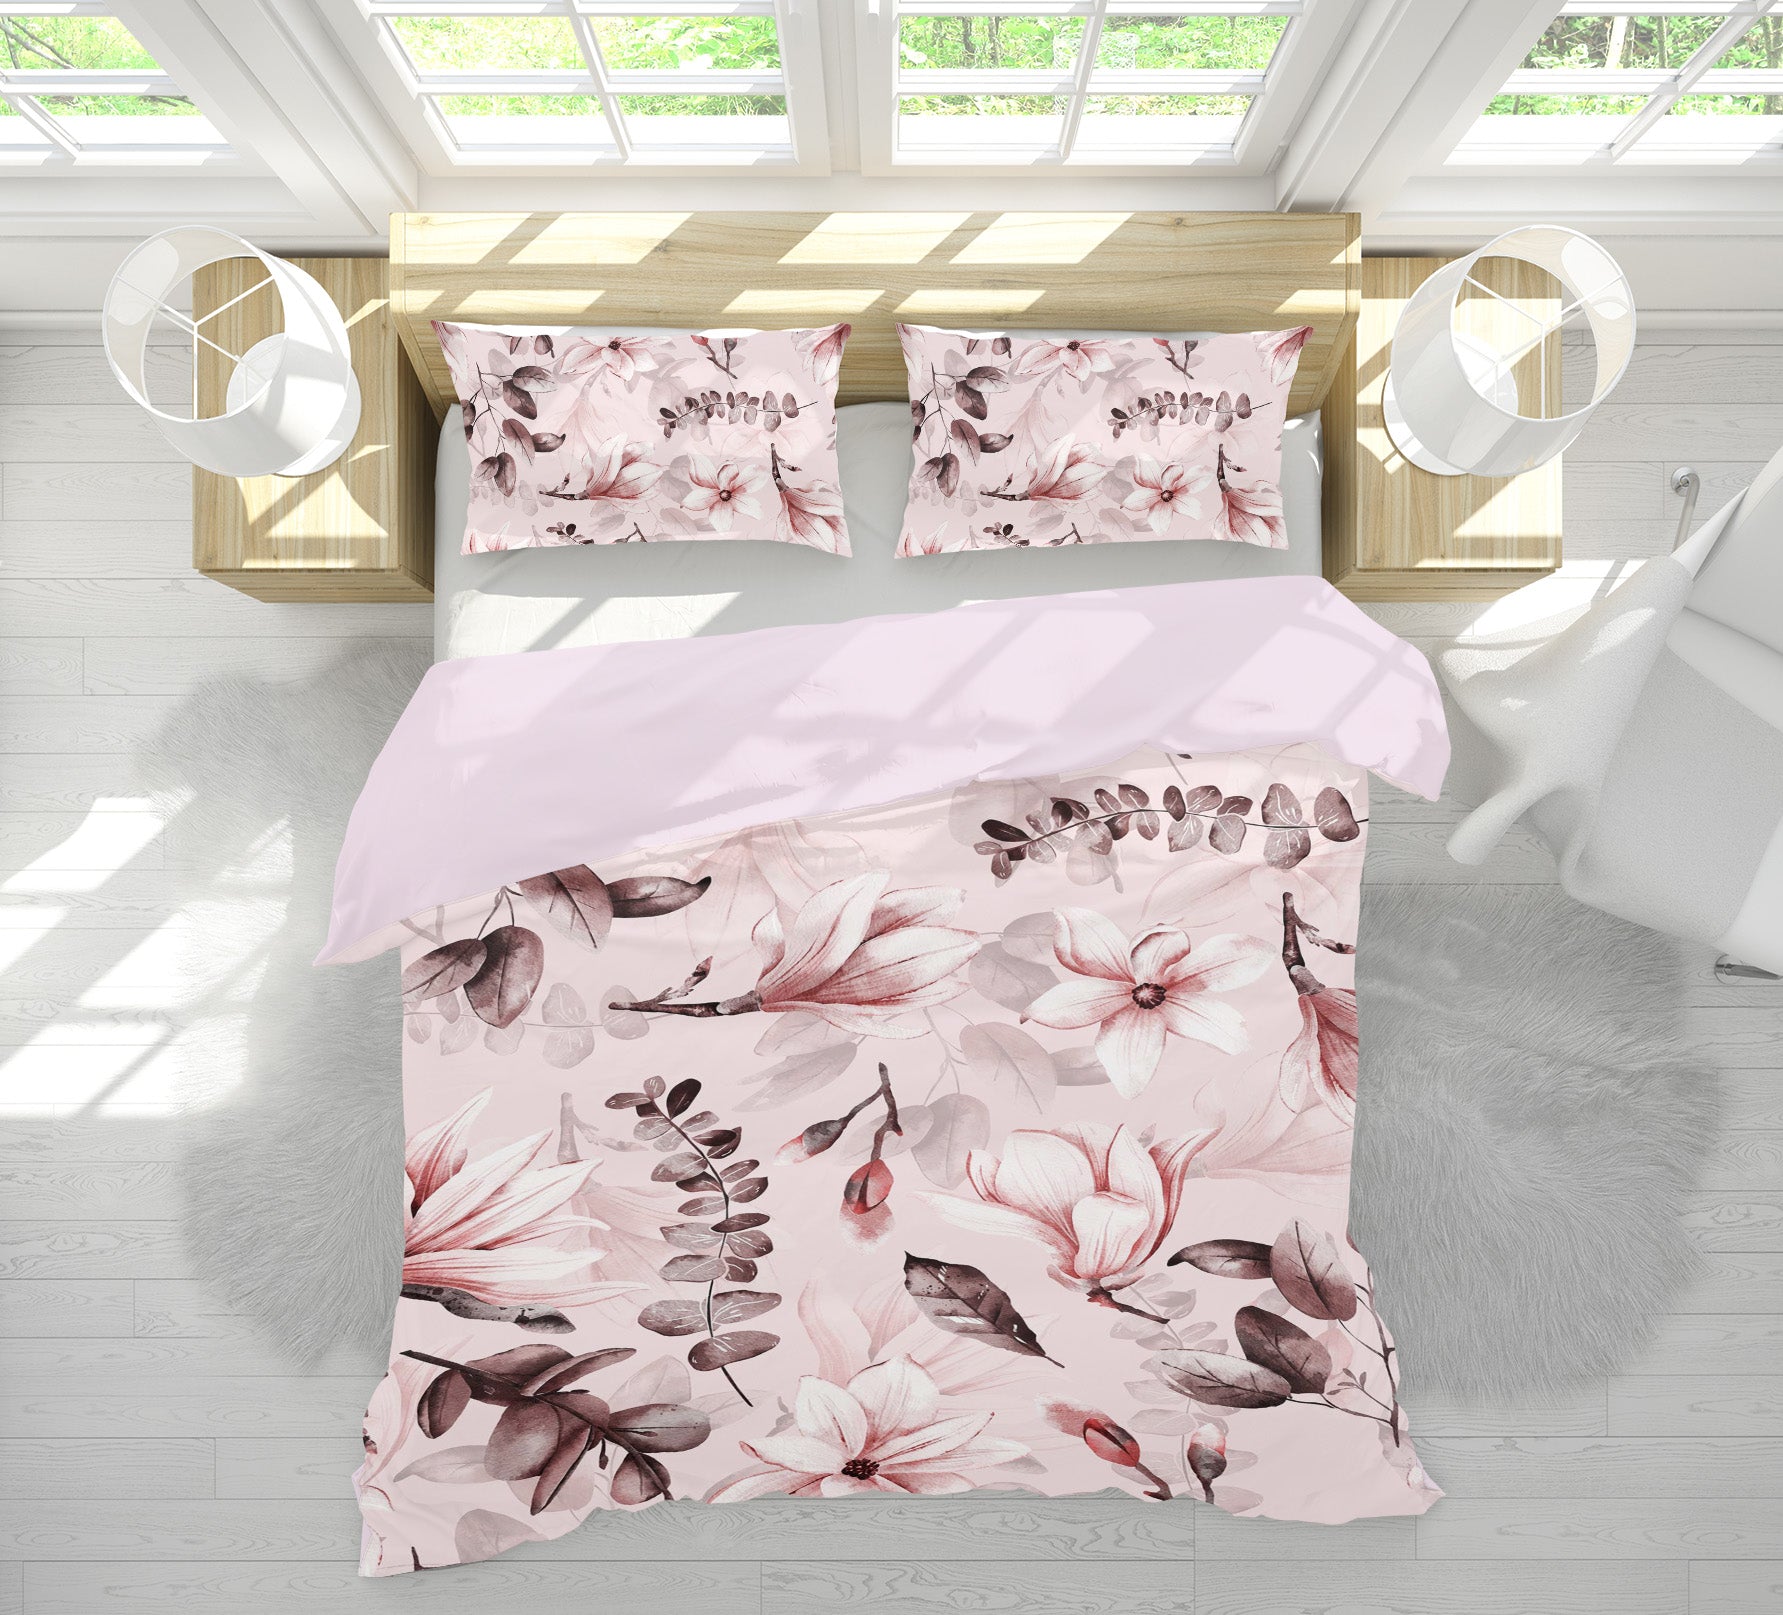 3D Flower 18195 Uta Naumann Bedding Bed Pillowcases Quilt